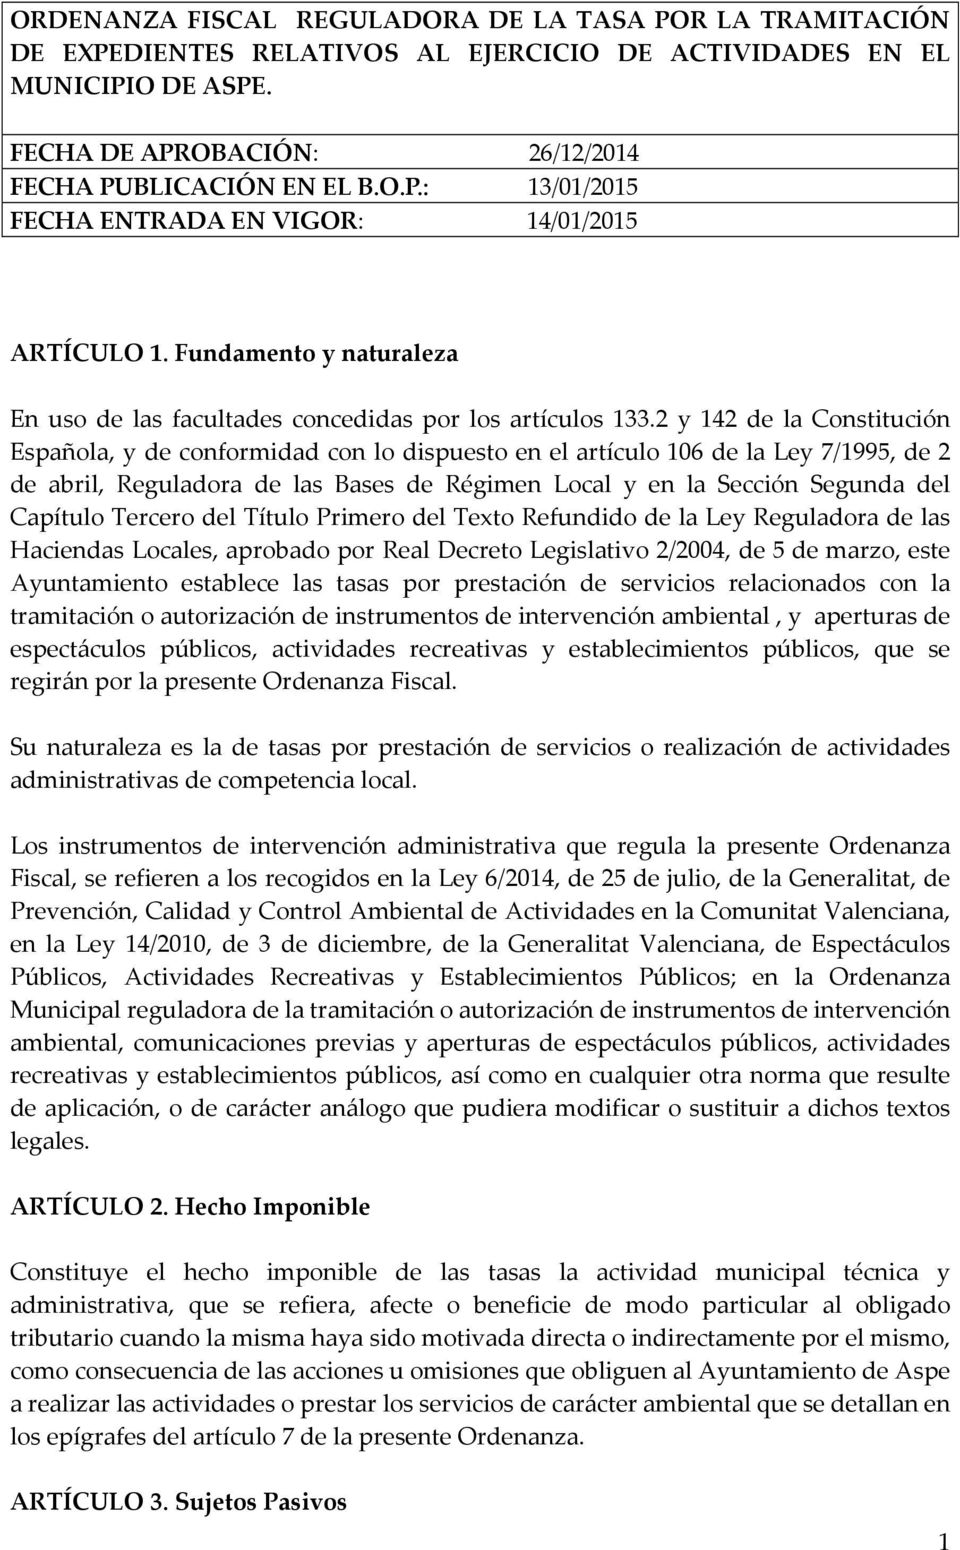 2 y 142 de la Constitución Española, y de conformidad con lo dispuesto en el artículo 106 de la Ley 7/1995, de 2 de abril, Reguladora de las Bases de Régimen Local y en la Sección Segunda del